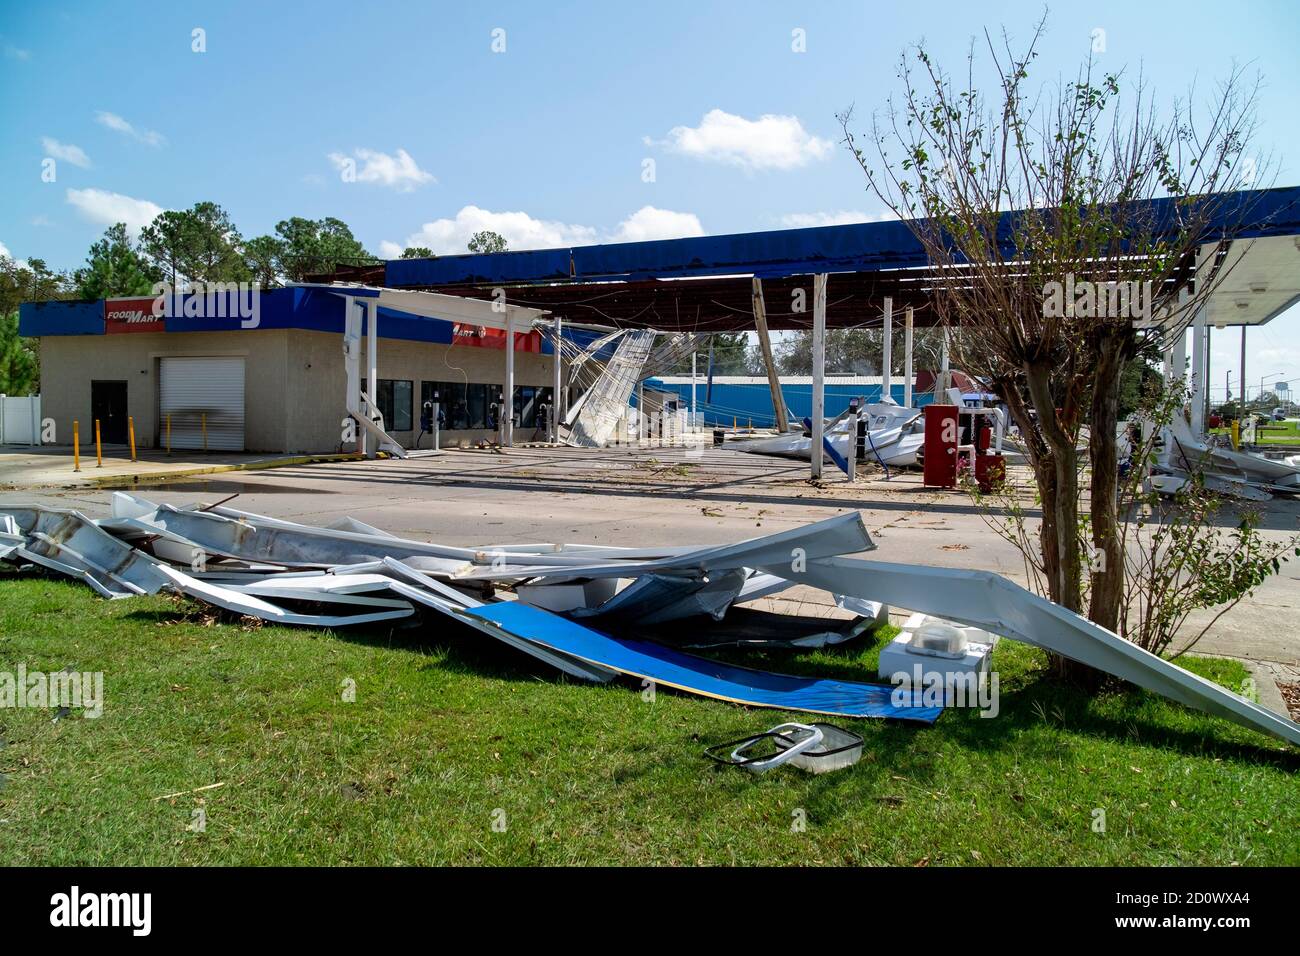 Distruzione in un negozio di articoli vari a Foley, Alabama, causata dall'uragano Sally. Foto Stock